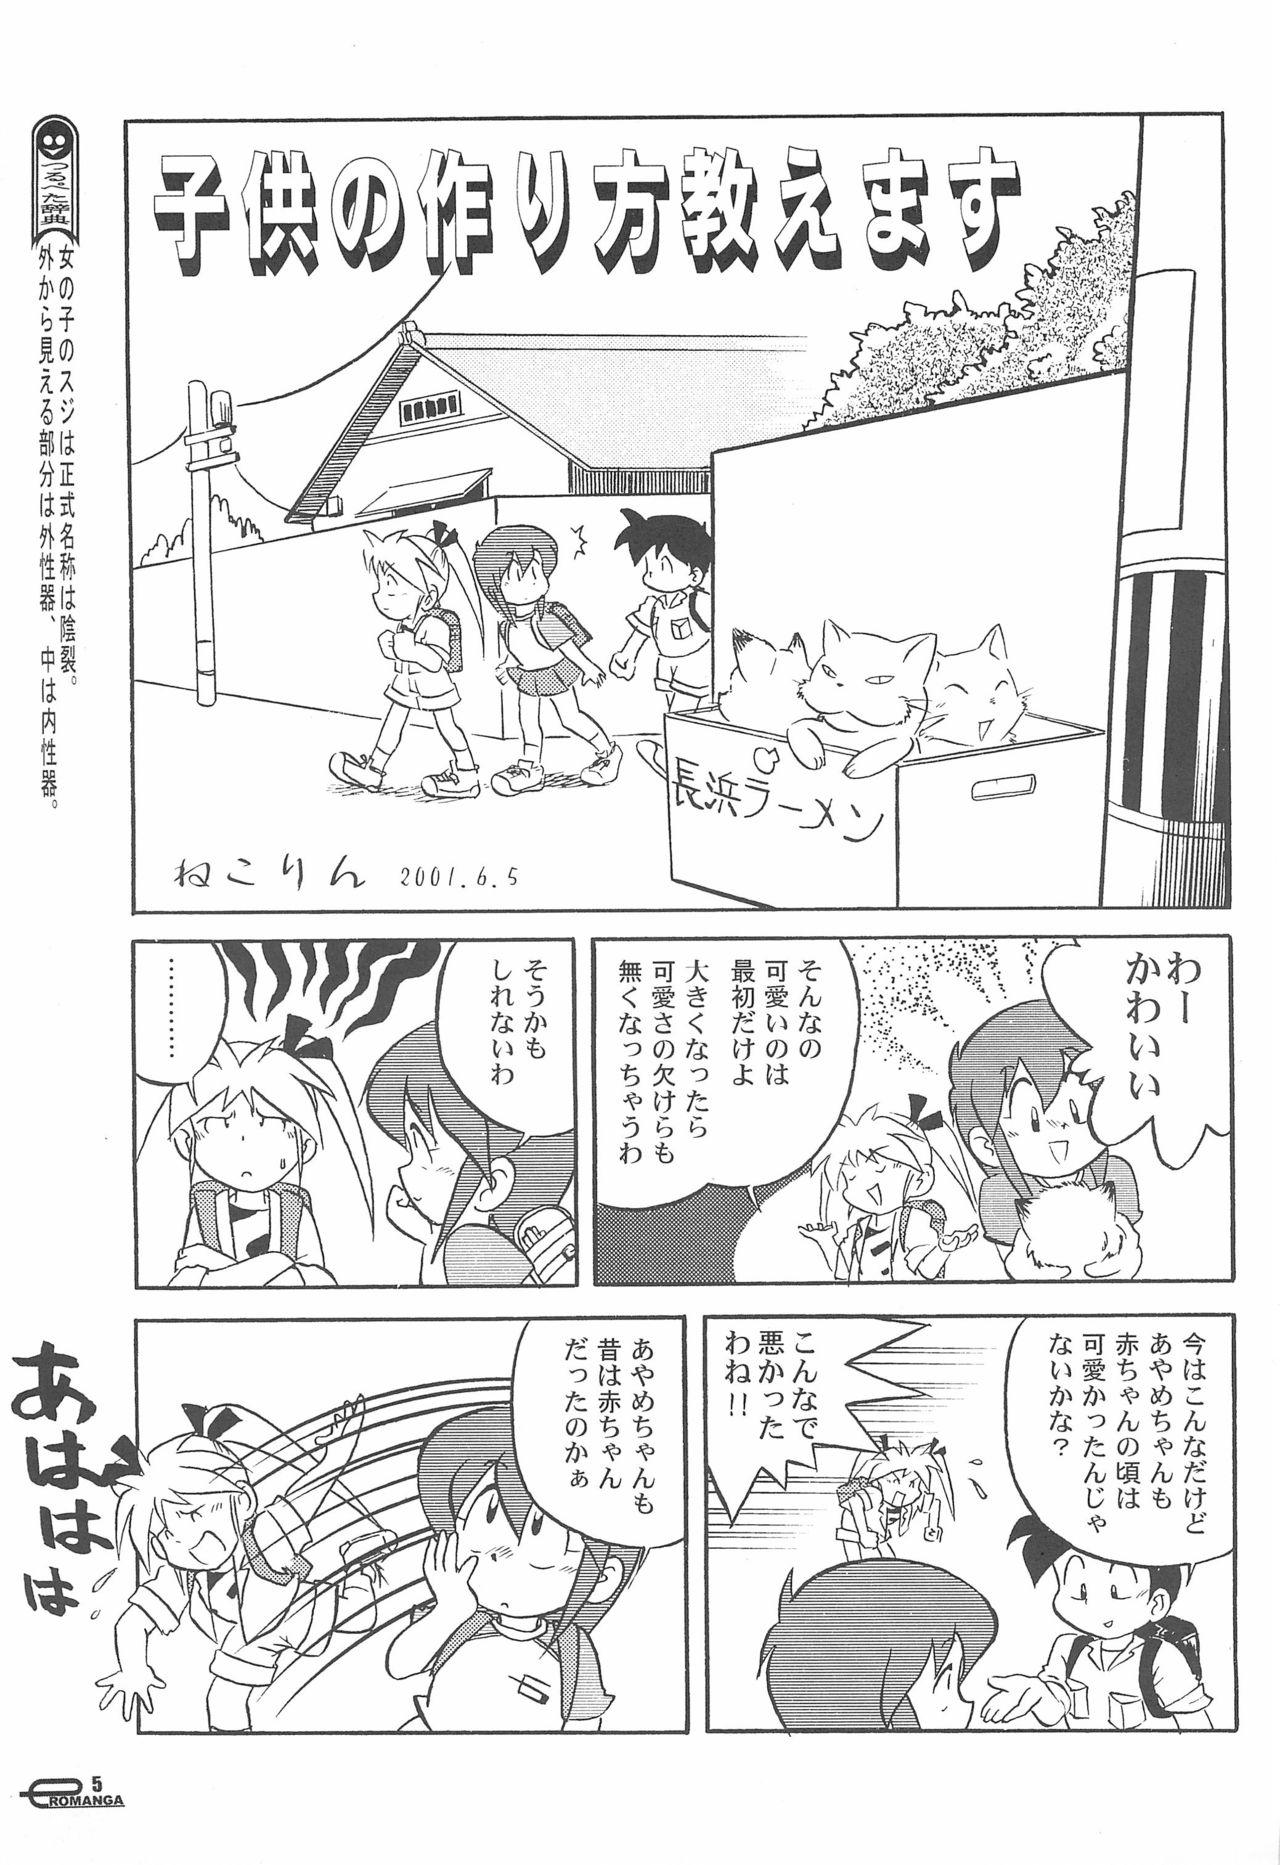 Interacial Manga Science Onna no ko no Himitsu - Manga science Dancing - Page 7